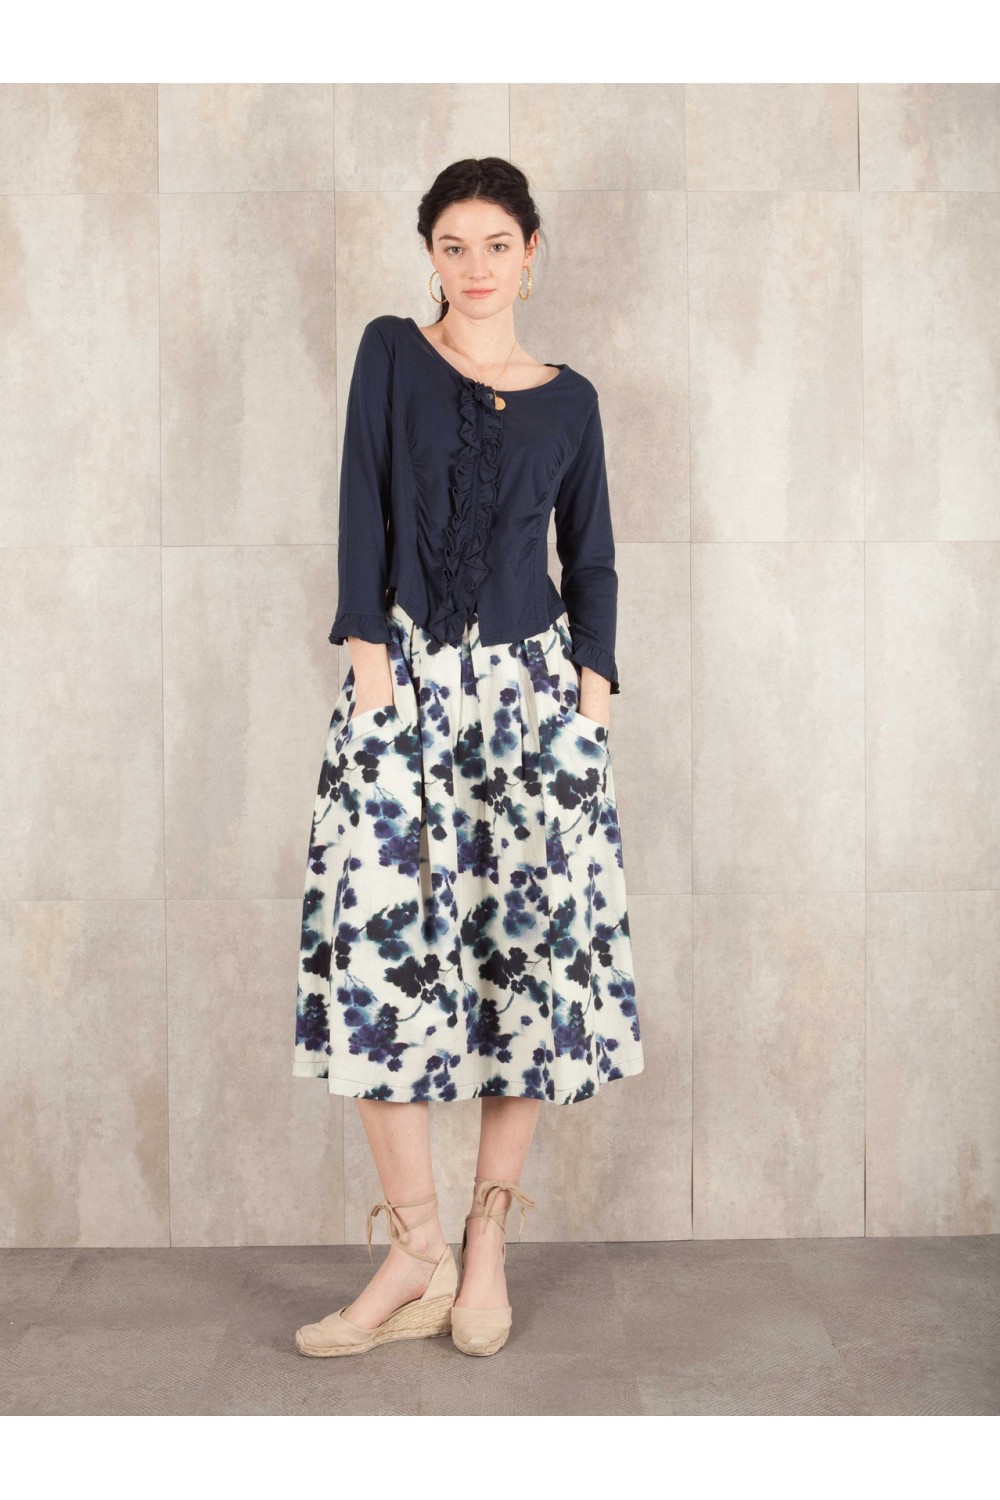 Skirt Digital print coton linen effect E16-30-CS